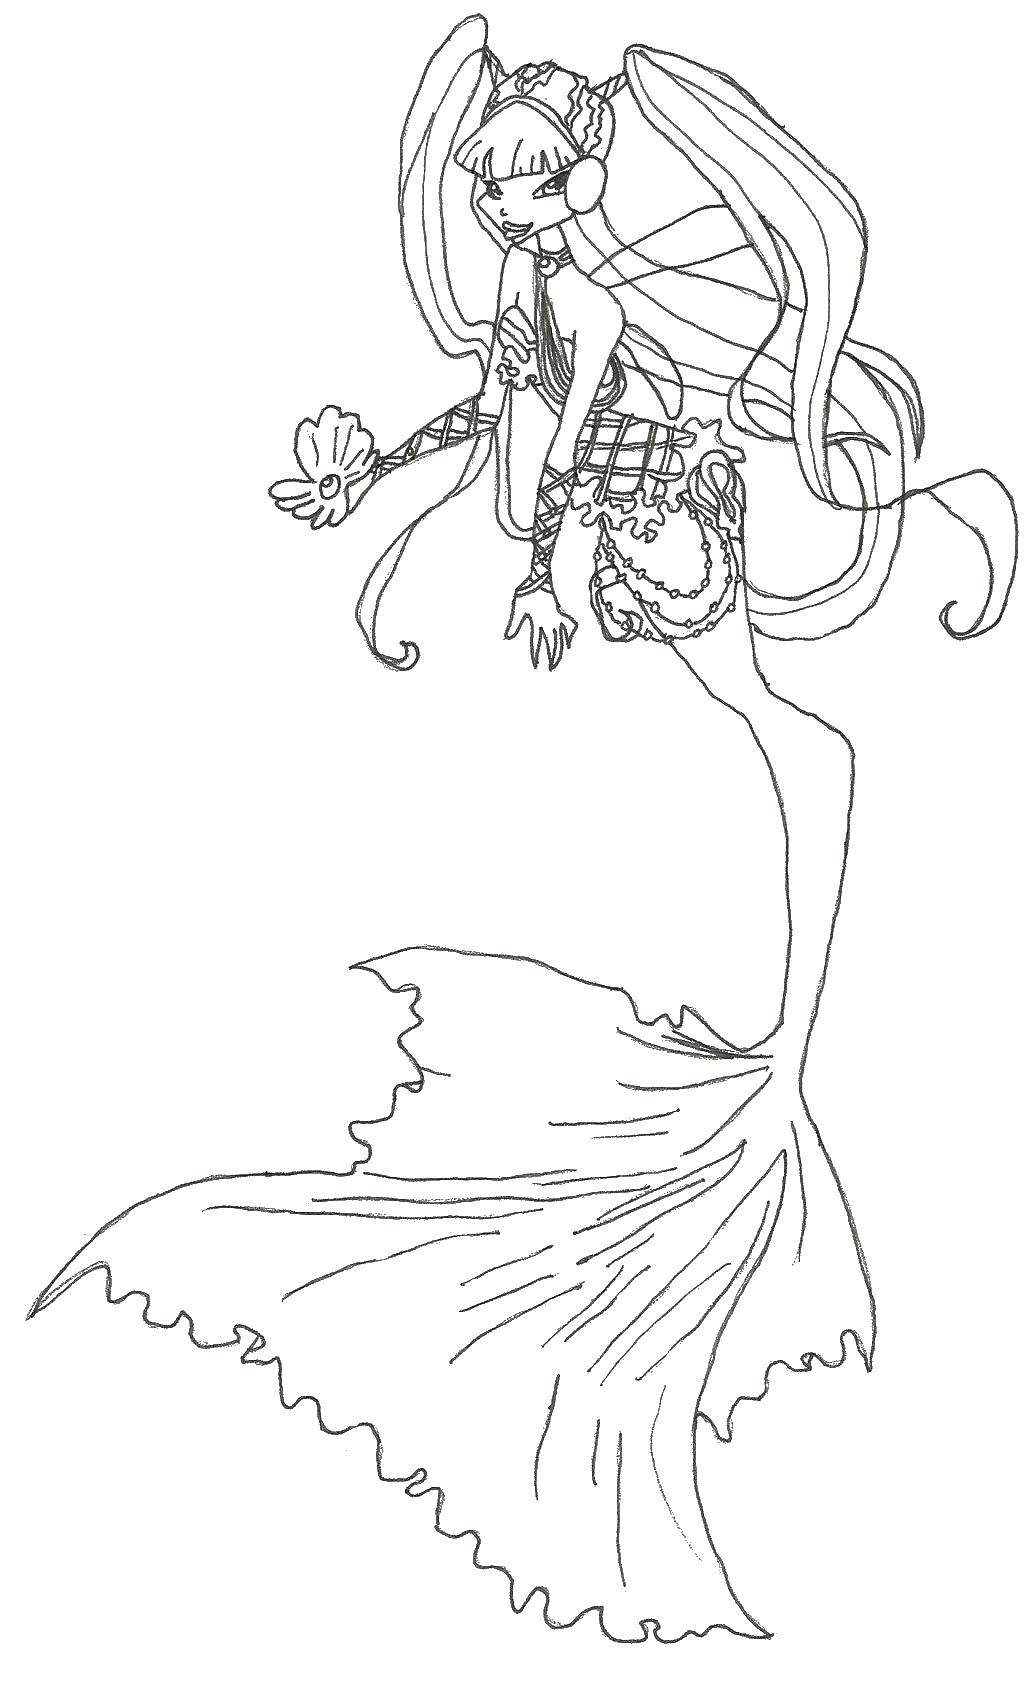 Опис: розмальовки  Муза стала русалкою. Категорія: Вінкс. Теги:  Персонаж з мультфільму, Winx.